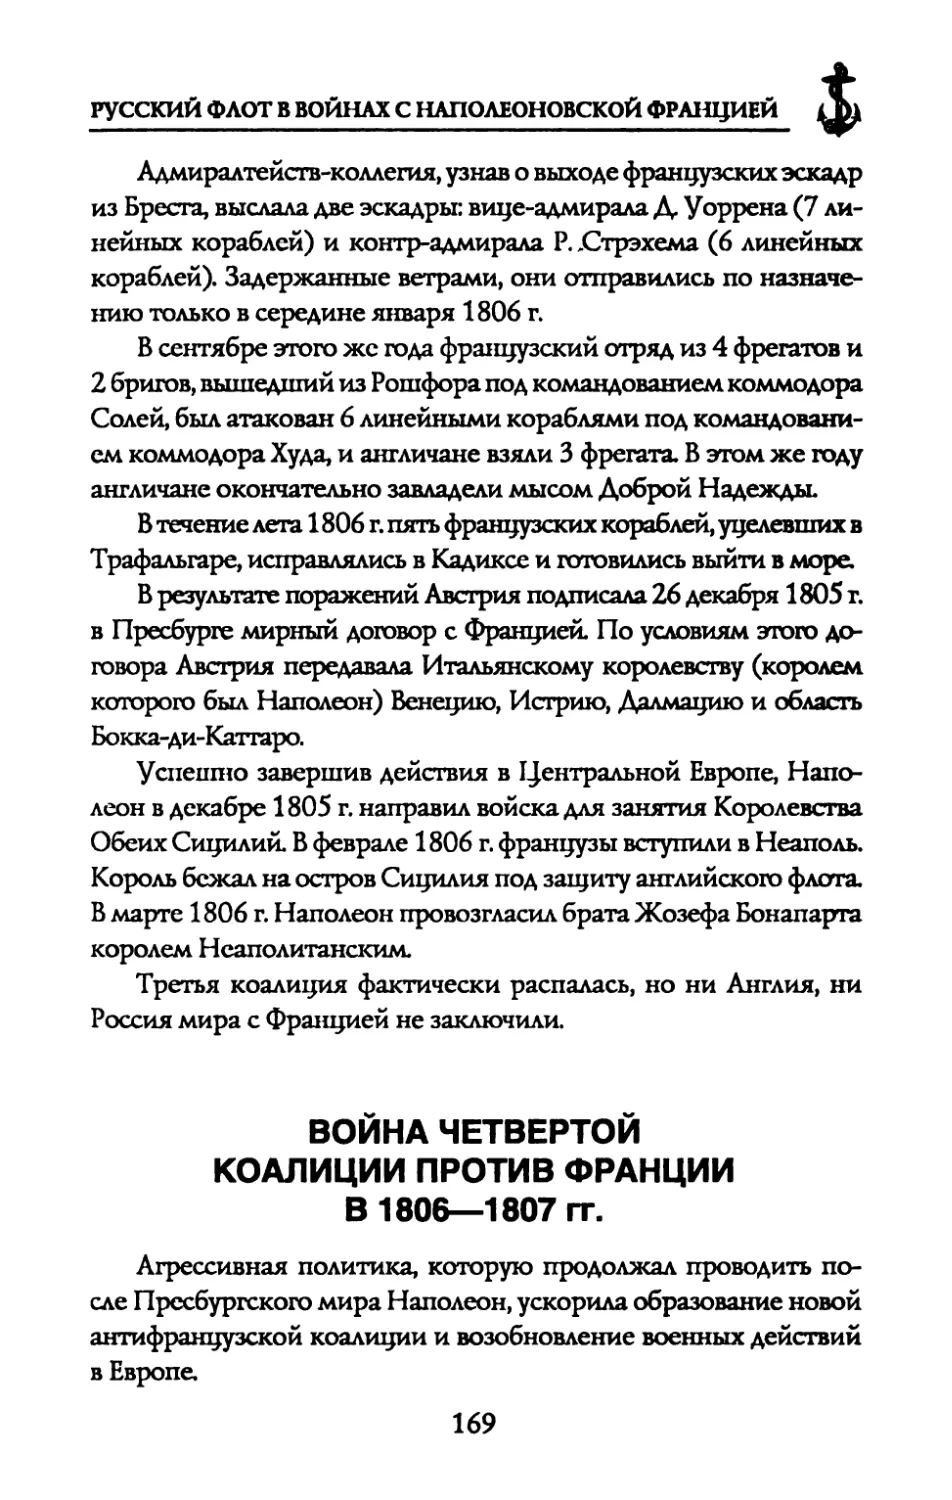 ВОЙНА ЧЕТВЕРТОЙ КОАЛИЦИИ ПРОТИВ ФРАНЦИИ В 1806—1807 гг.